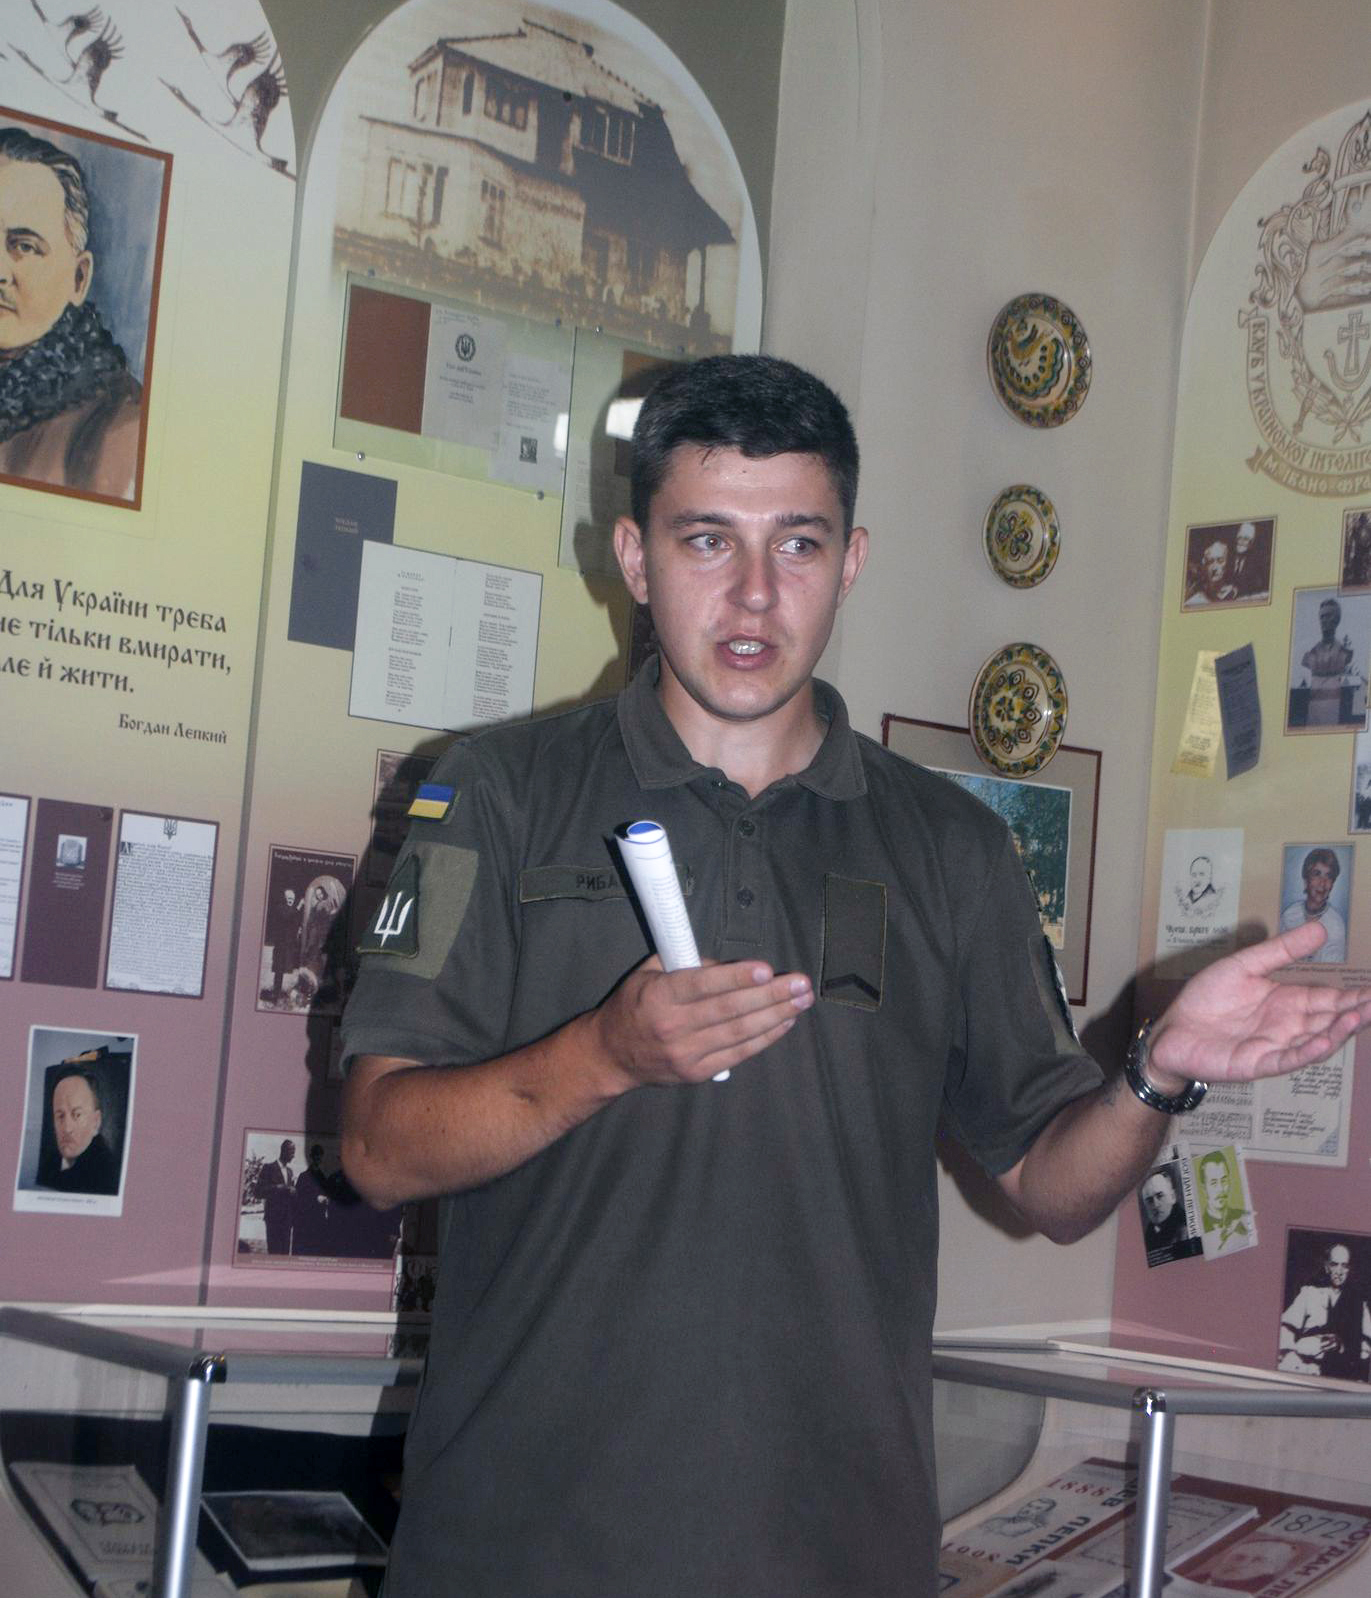 Думками про літературний захід у музеї ділиться військовослужбовець ЗСУ Максим Рибак.